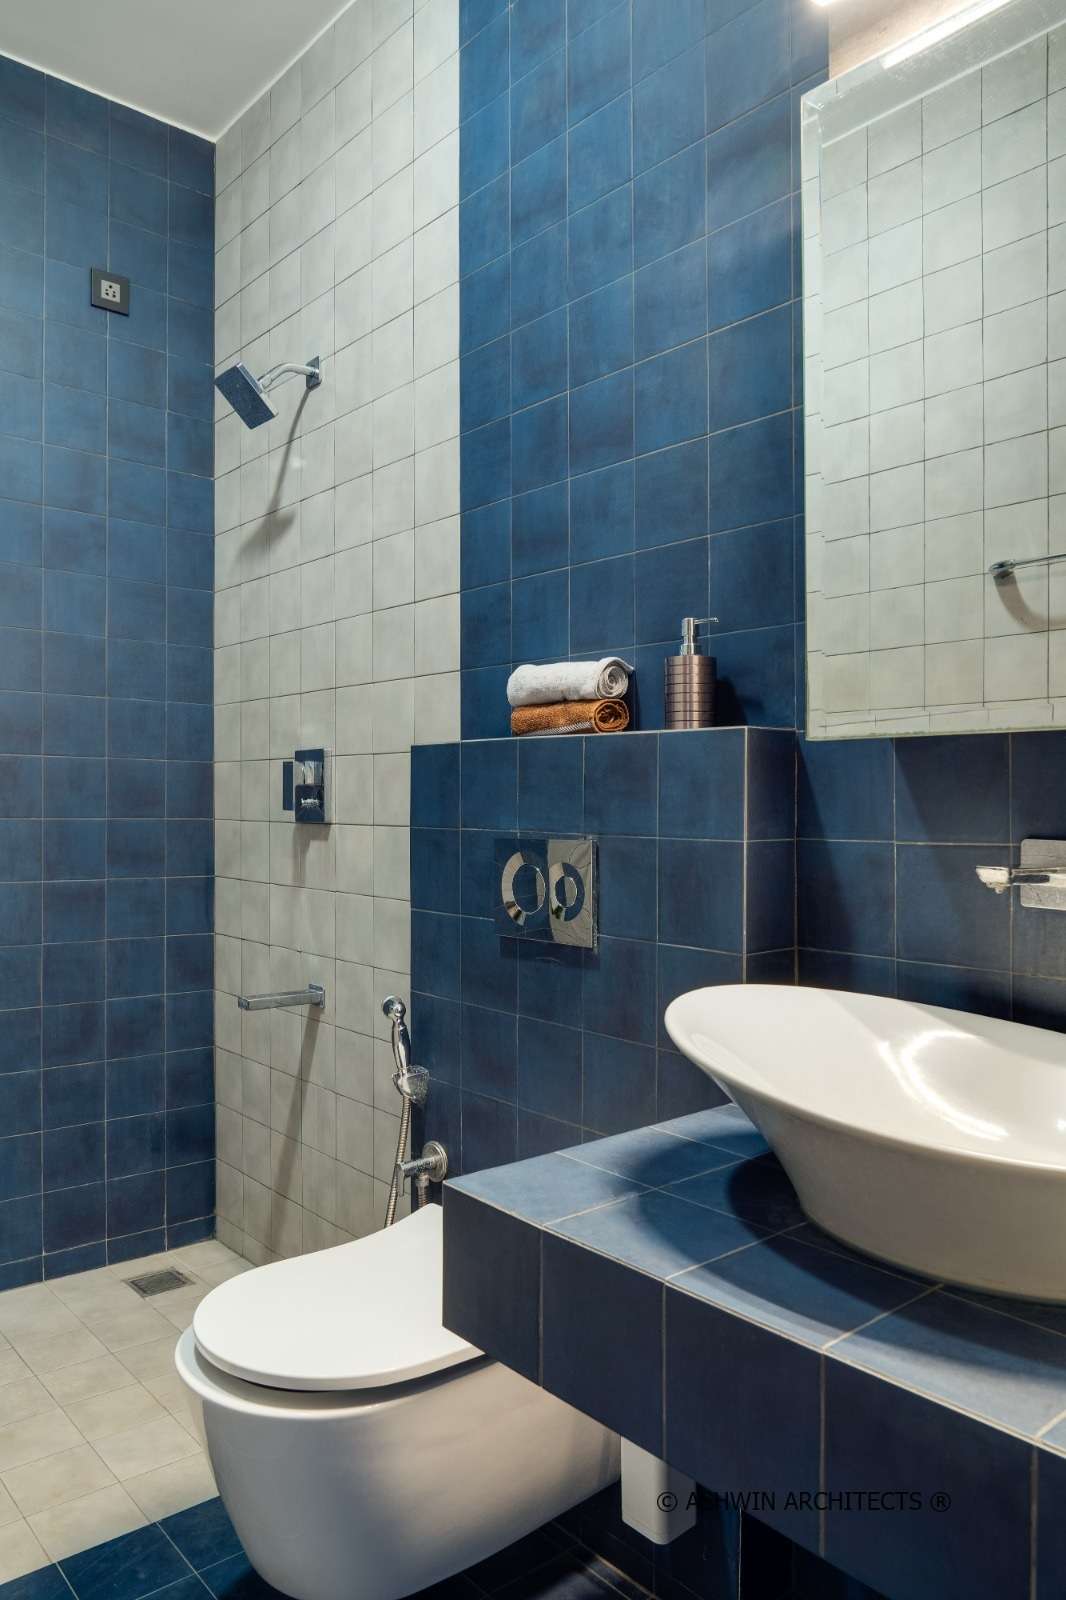 Tridalam-Residential-Architecture-Bathroom-Design-1